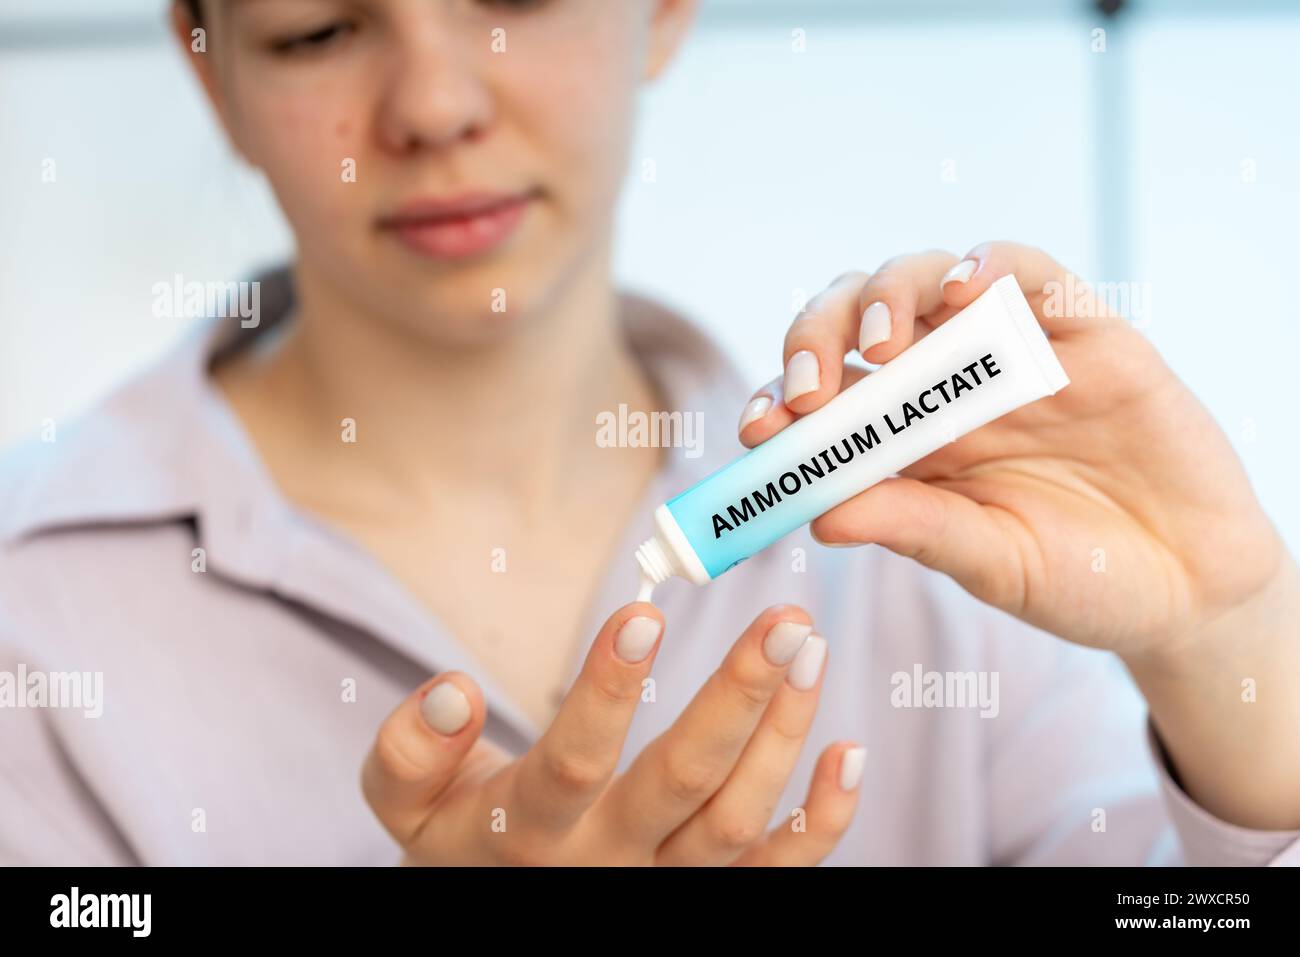 Ammonium lactate medical cream, conceptual image Stock Photo